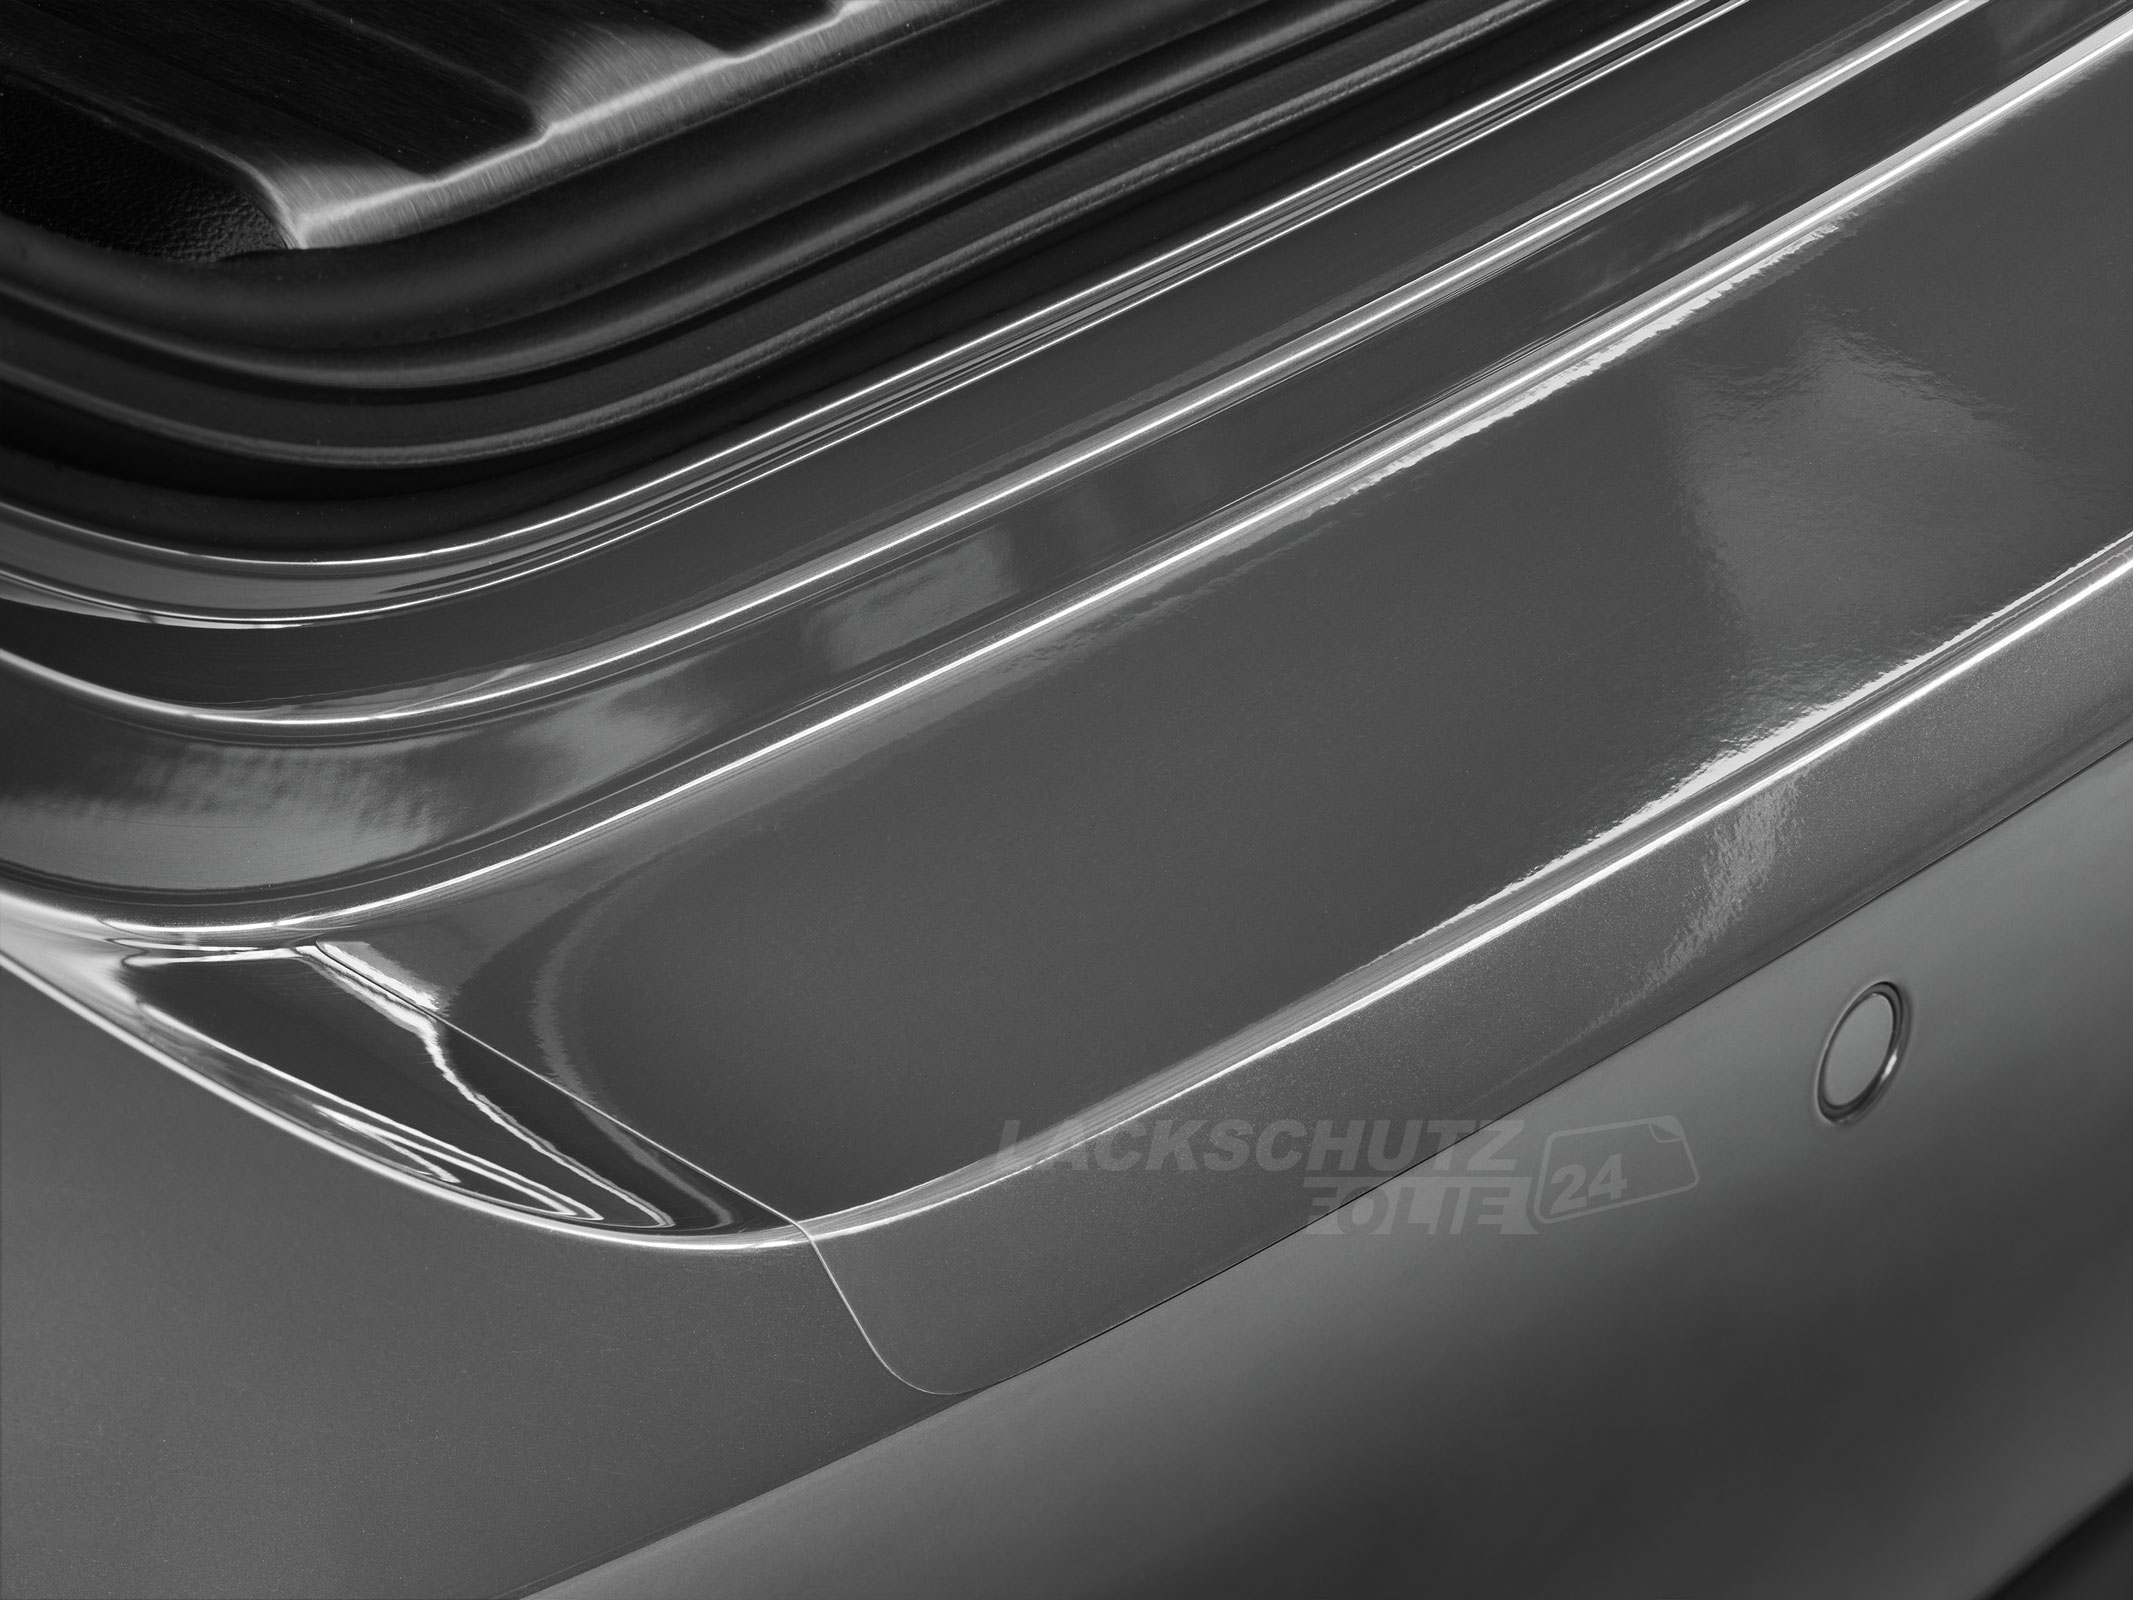 Ladekantenschutzfolie - Transparent Glatt Hochglänzend 240 µm stark für BMW MINI Typ R50/R53, BJ 2001-2006